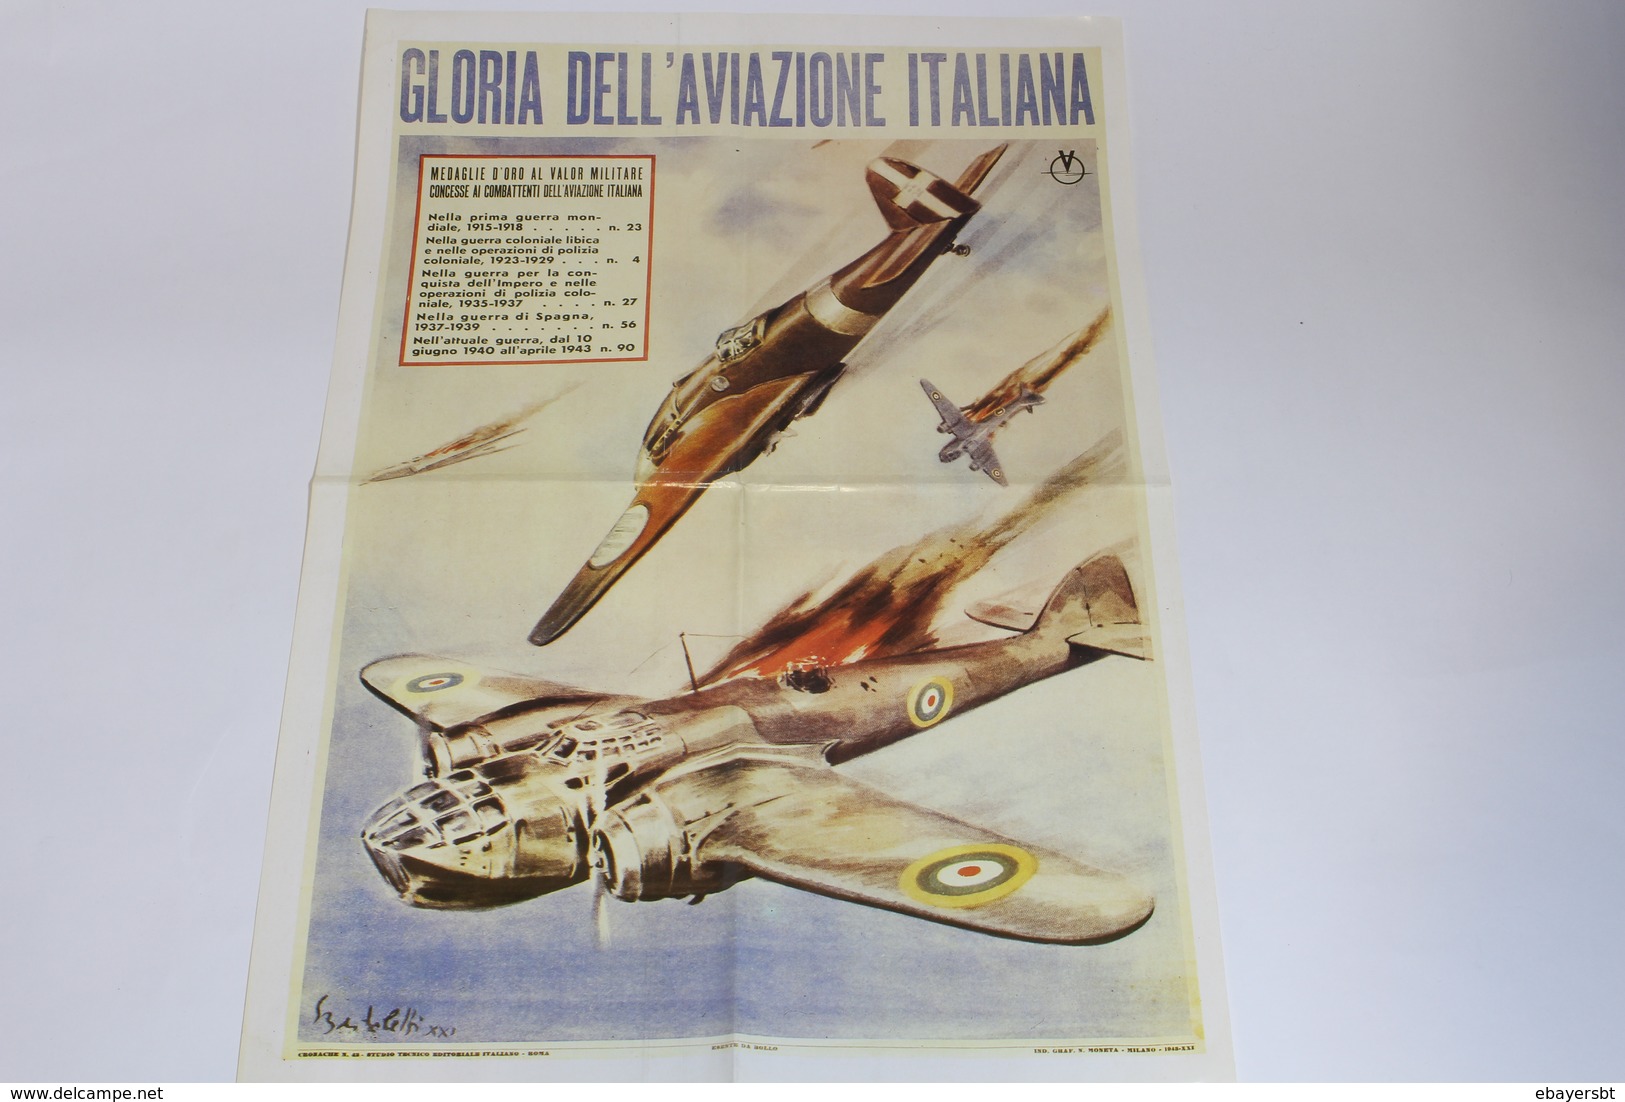 Lotto Manifesto Locandina Propaganda 2° Guerra Mondiale Fascismo 35x50 Riproduzioni Collezione Storia Vintage 12 Pezzi - Oorlog 1939-45